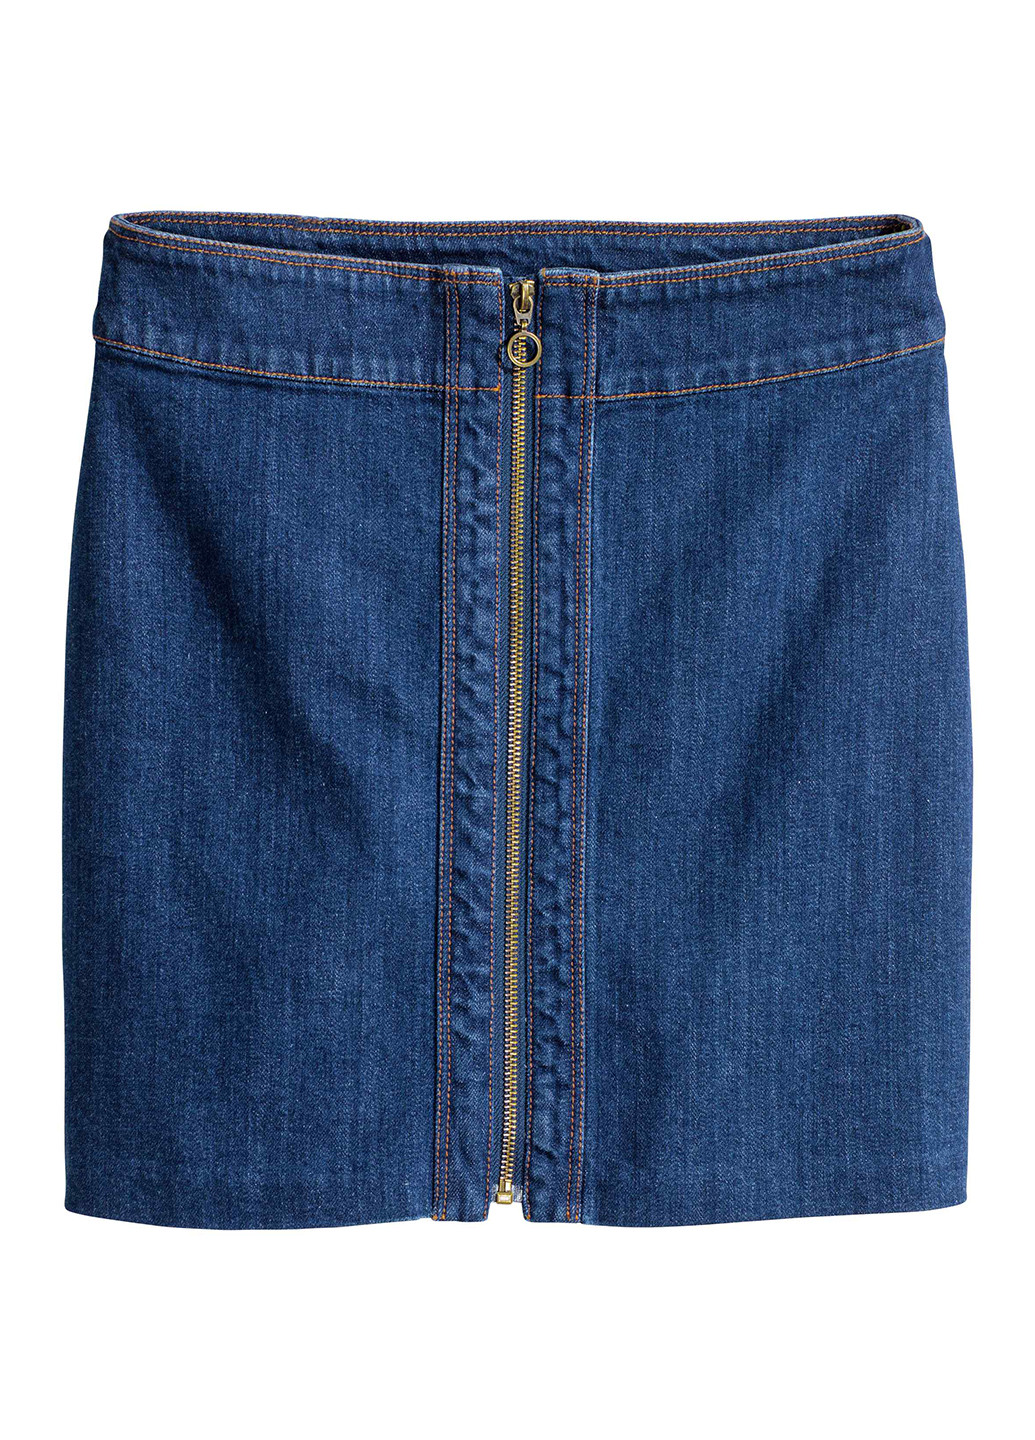 Темно-синяя джинсовая юбка H&M а-силуэта (трапеция)